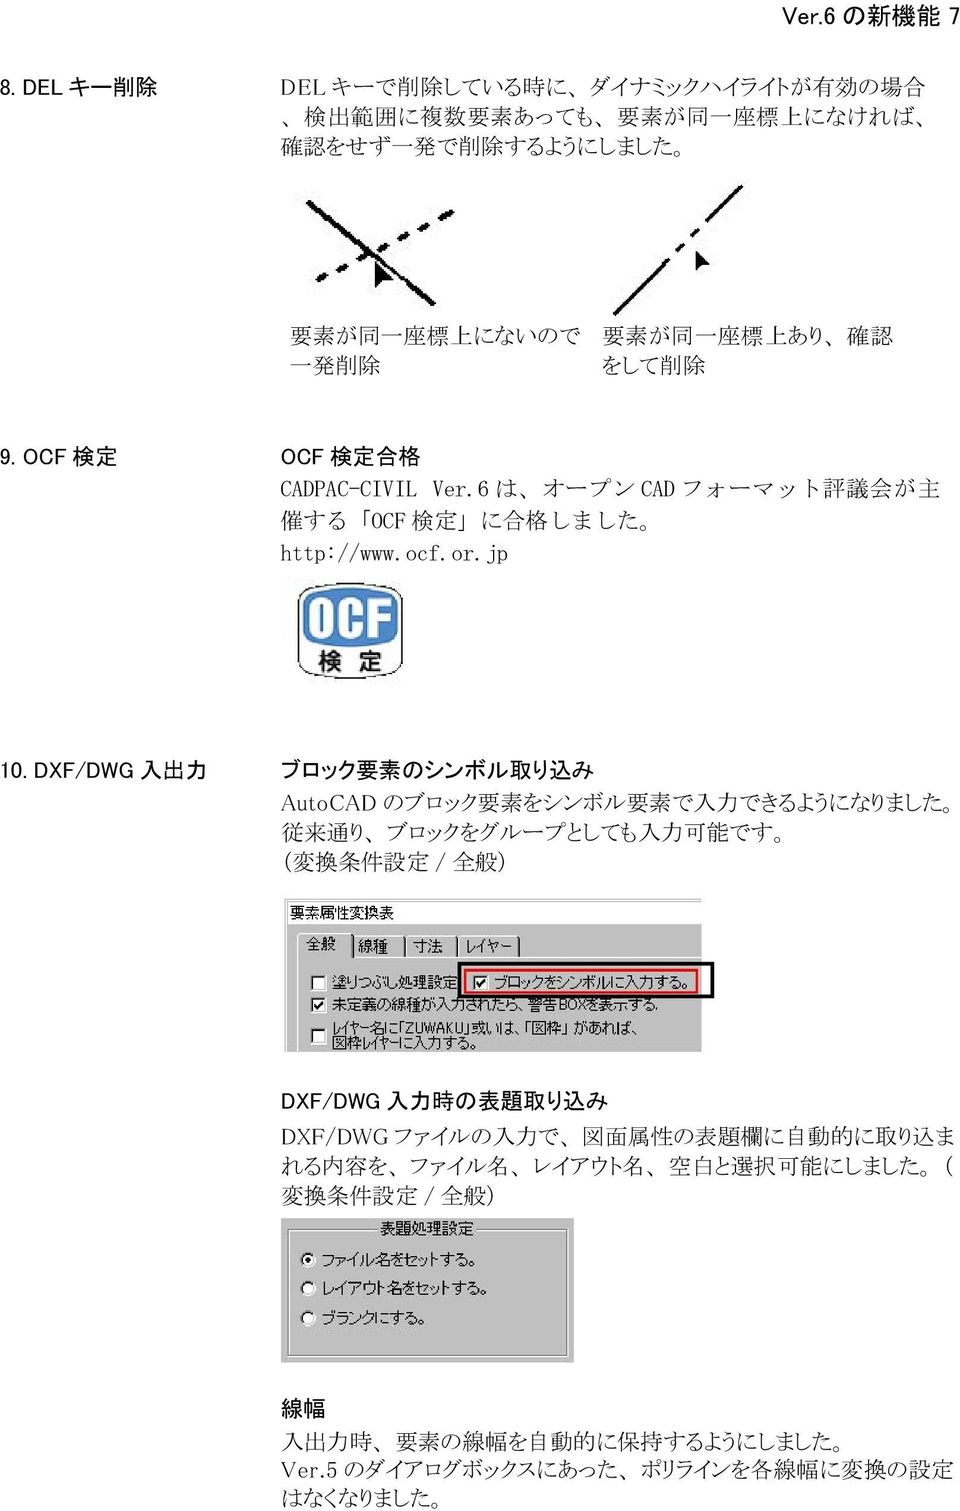 認 をして 削 除 9. OCF 検 定 OCF 検 定 合 格 CADPAC-CIVIL Ver.6 は オープン CAD フォーマット 評 議 会 が 主 催 する OCF 検 定 に 合 格 しました http://www.ocf.or.jp 10.